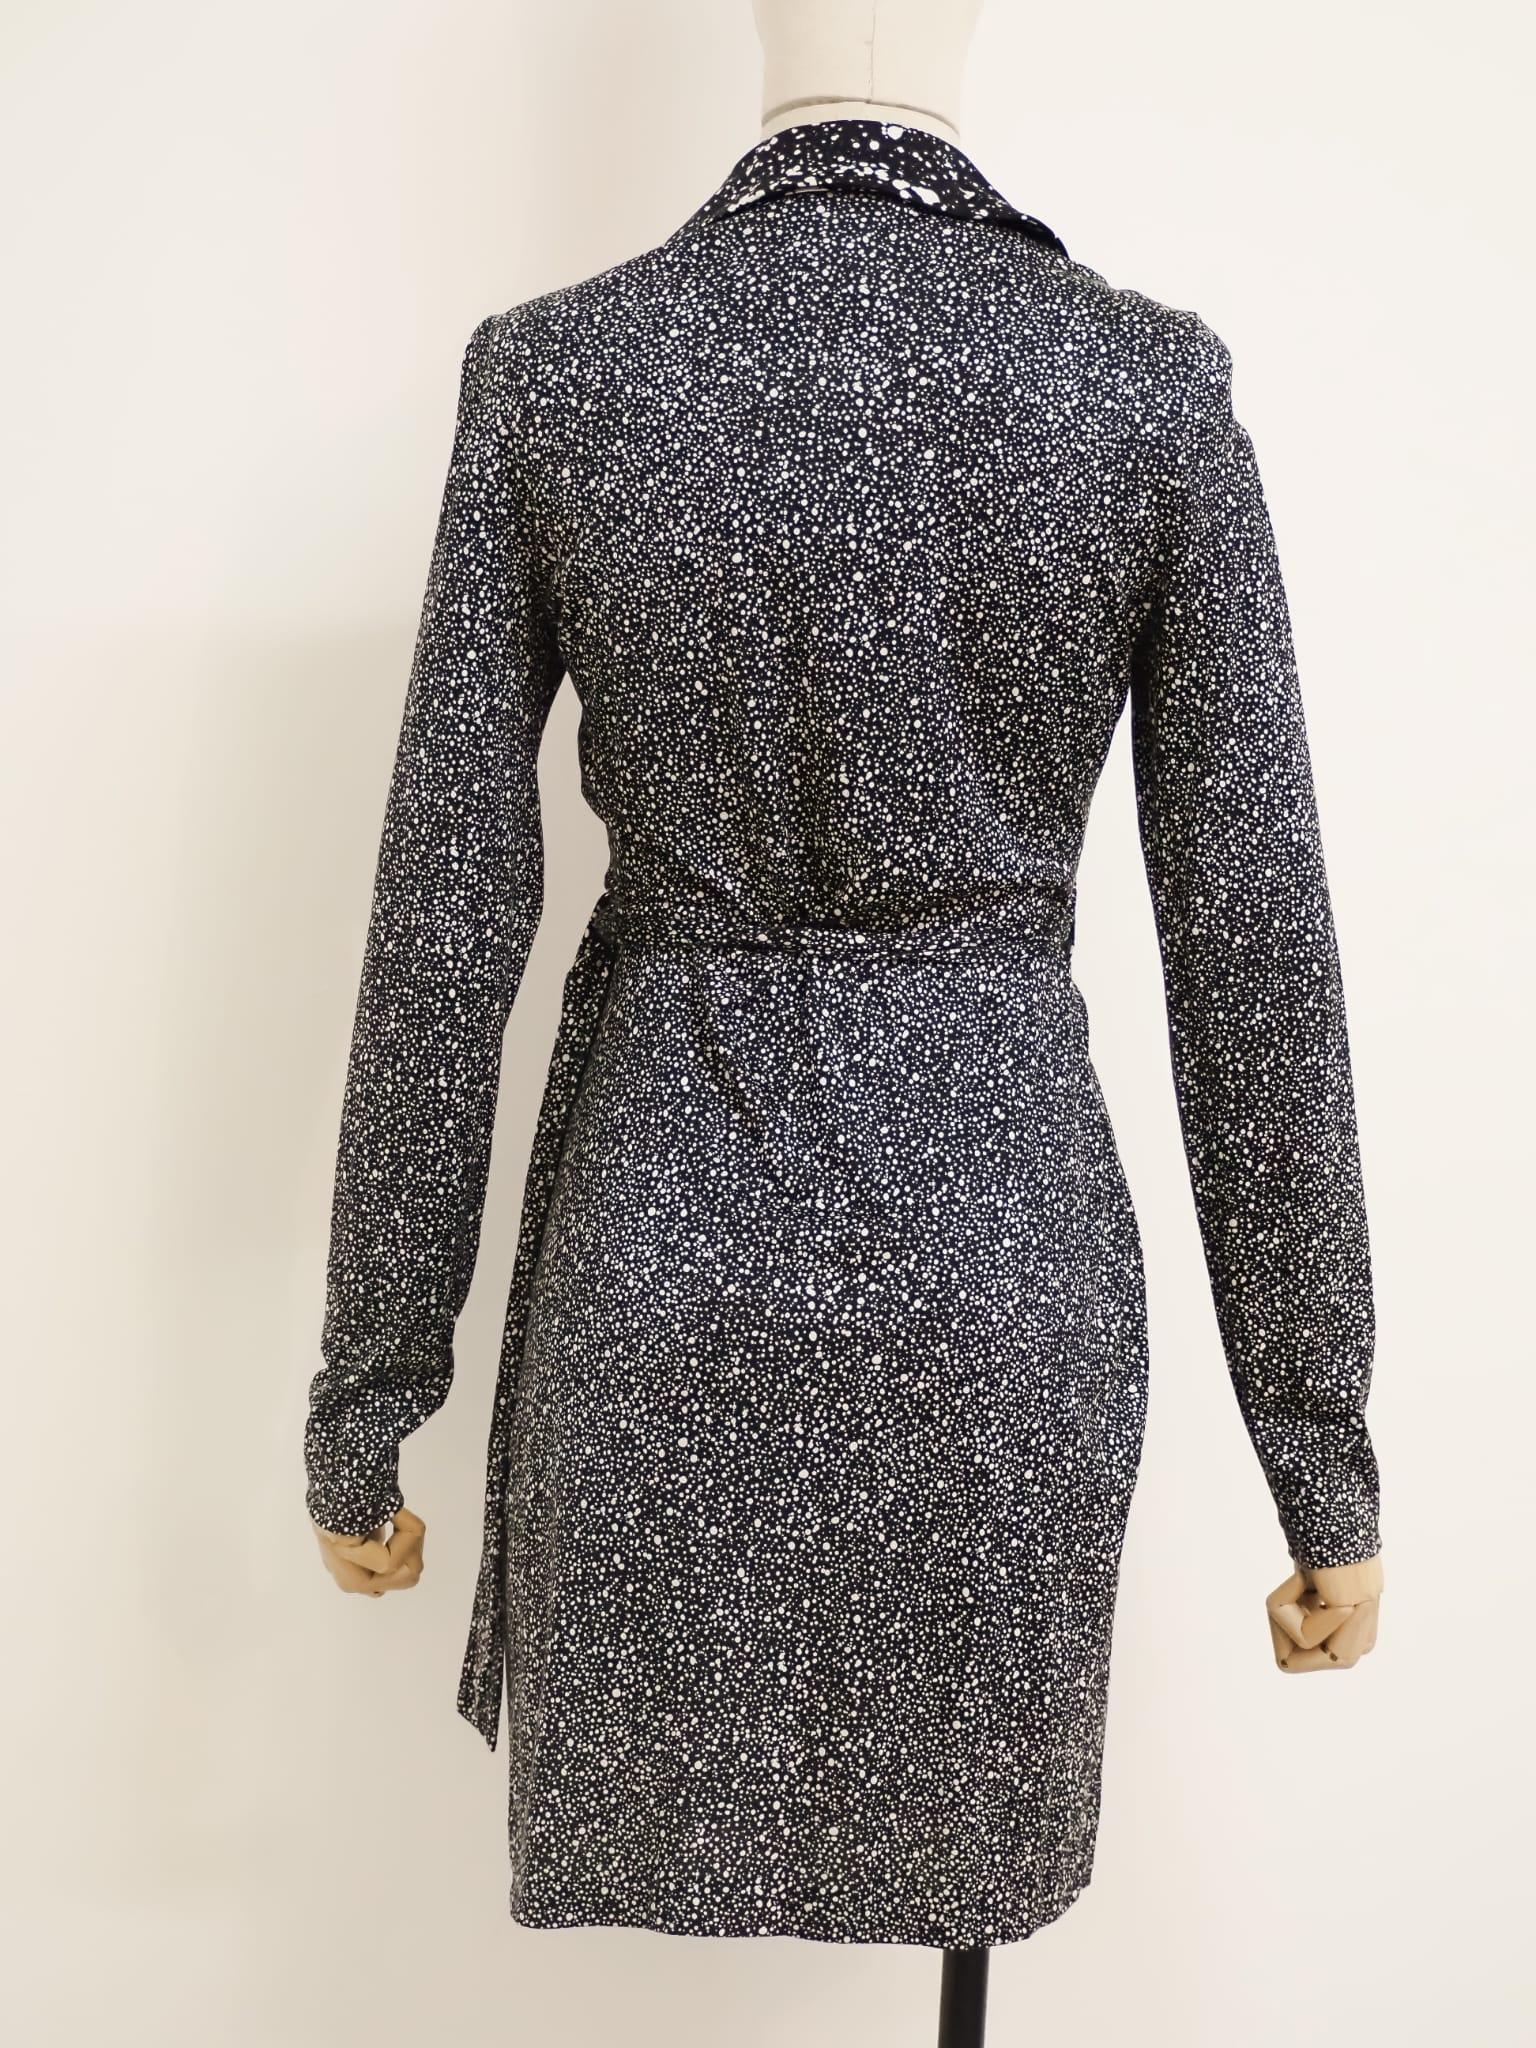 Diane von Furstenberg dress For Sale 6